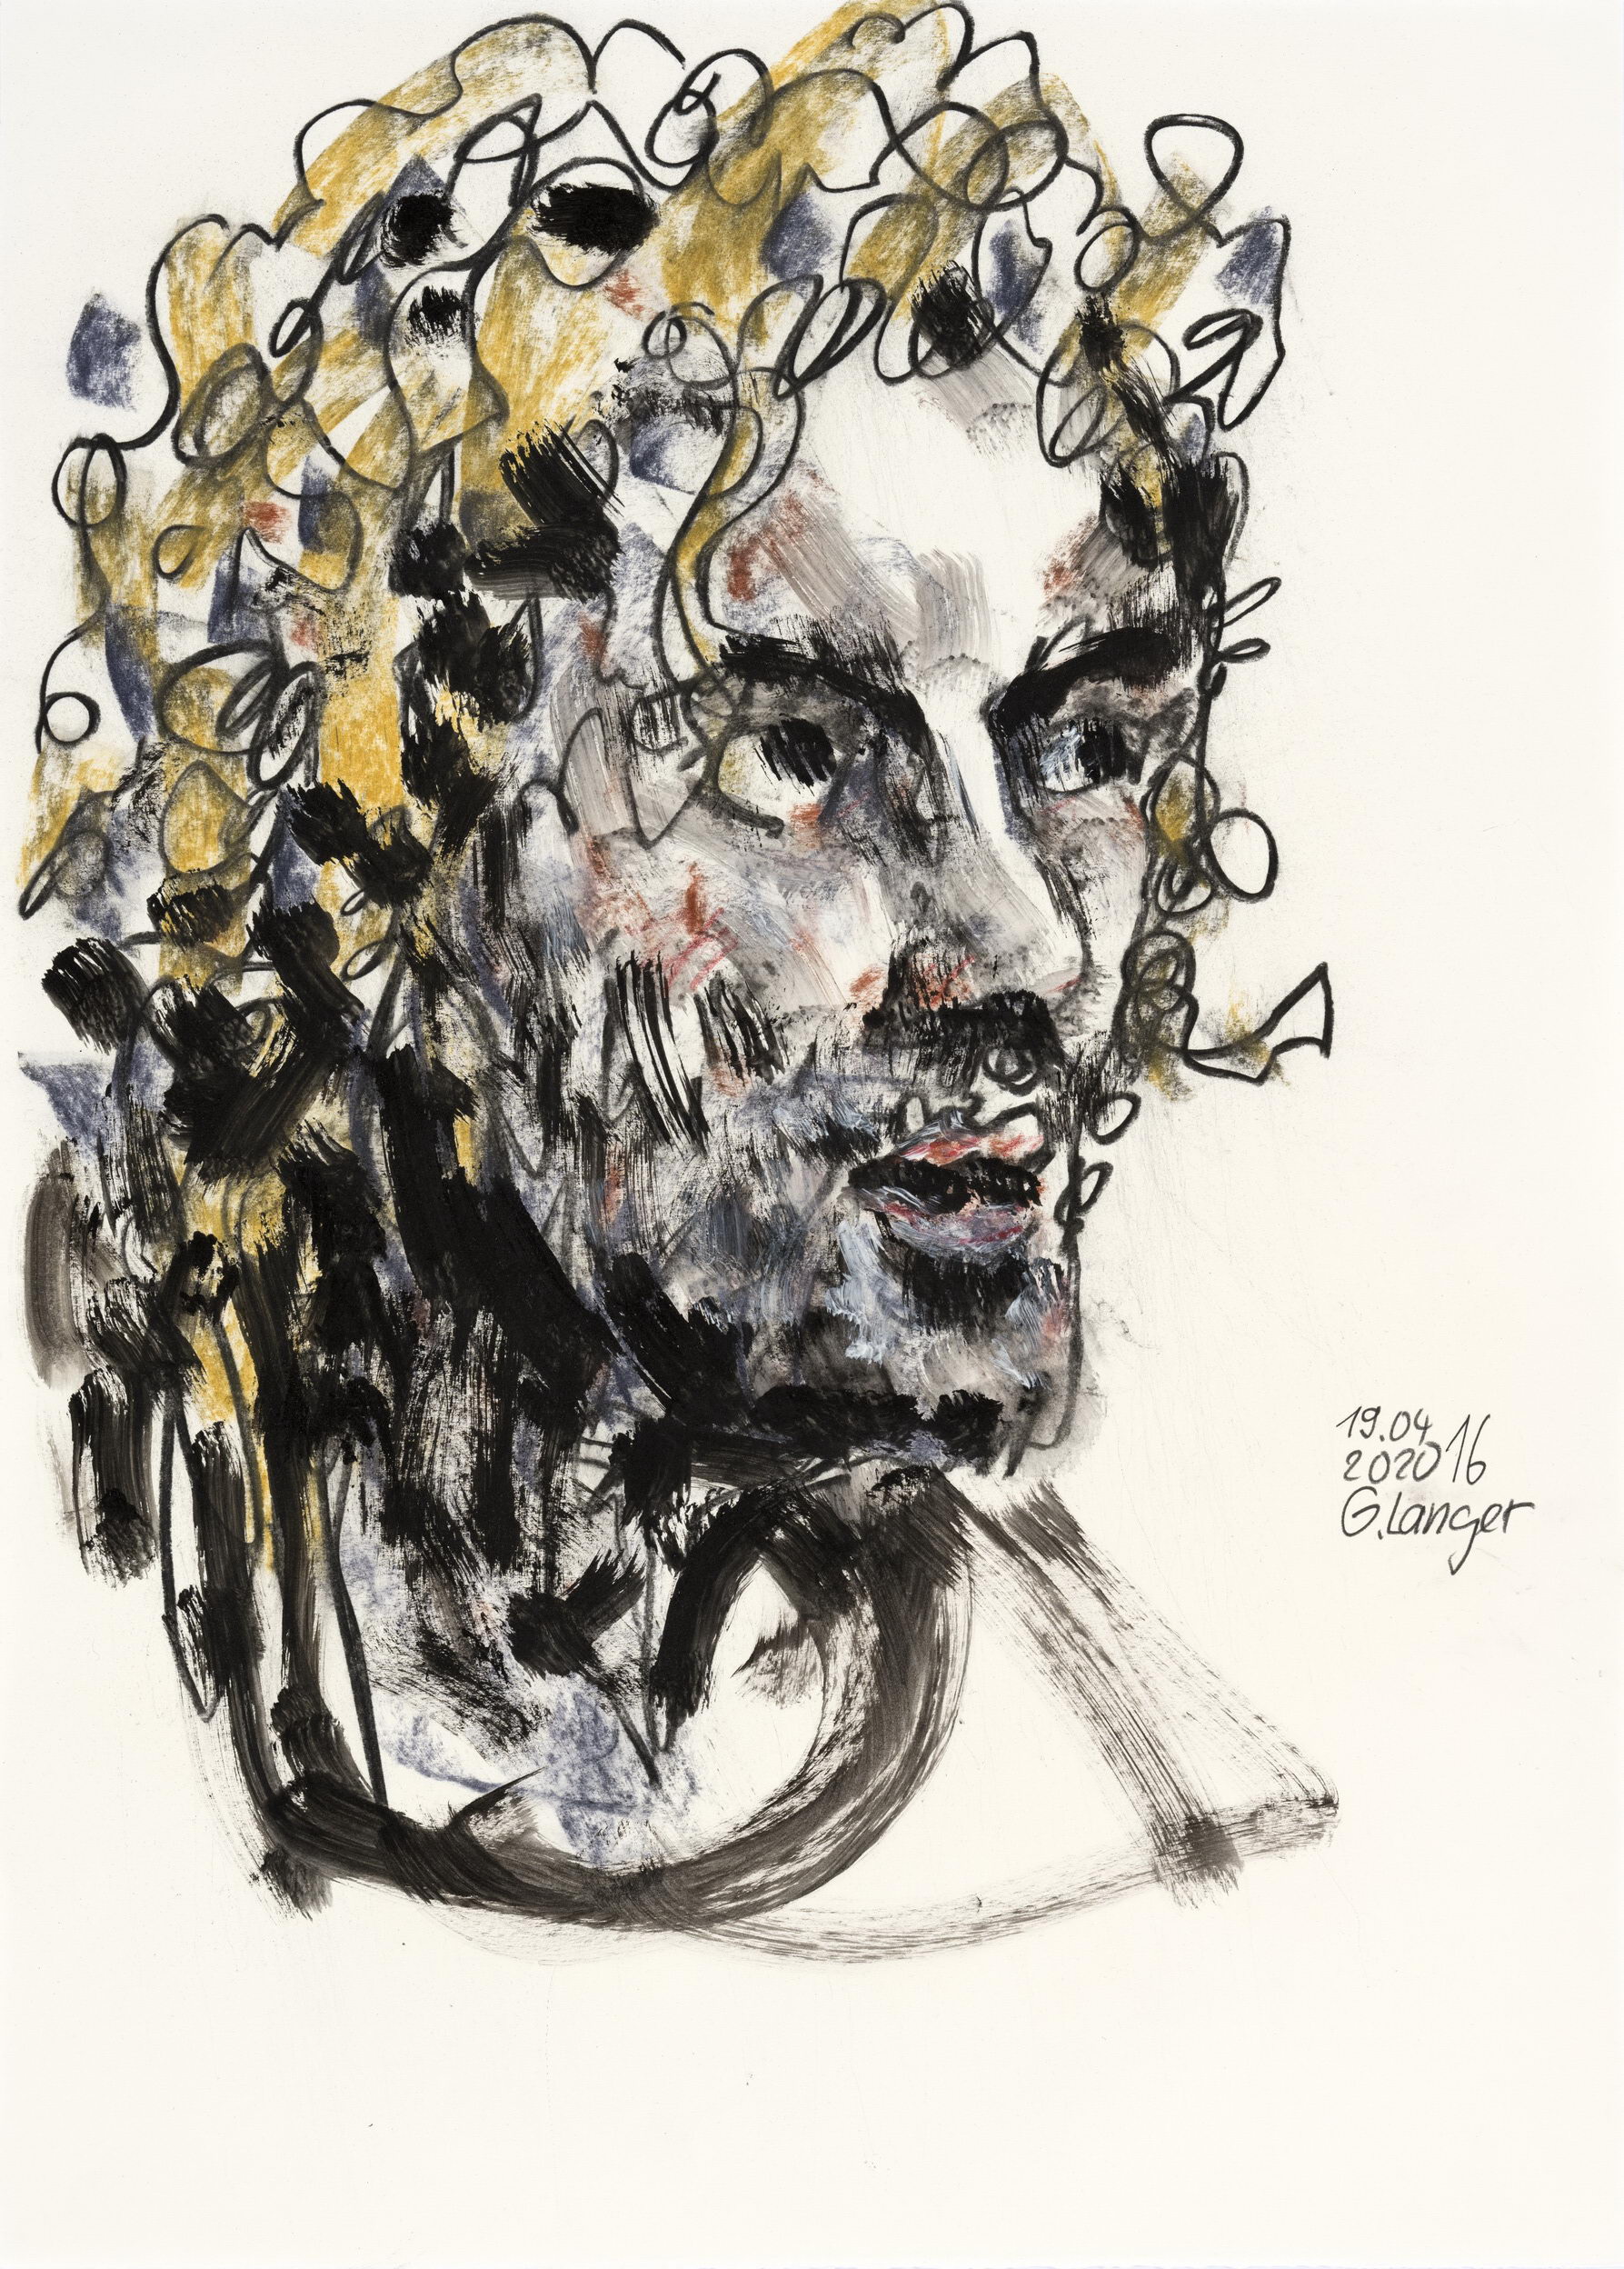 Gunter Langer, Männerportrait, 2020, Kohlezeichnung, Zeichenpapier, 71 x 51 cm